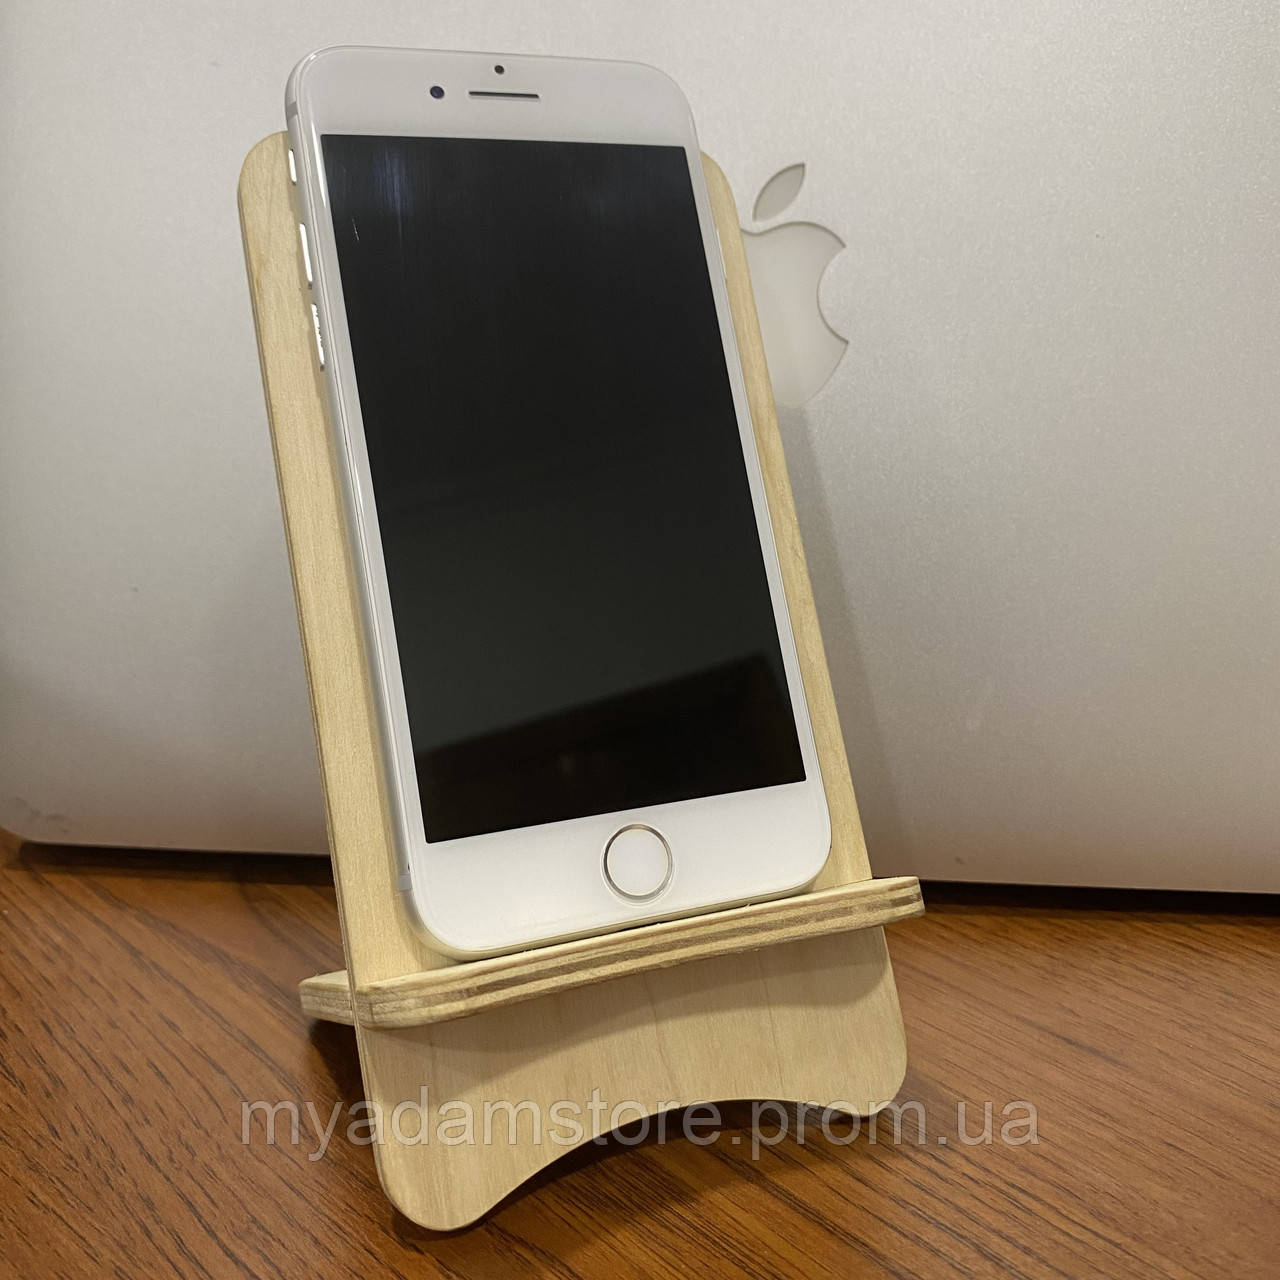 

Apple iPhone 8 64Gb Silver (Белый) (Б / У) айфон/оригинал/гарантия/неверлок/магазин/купить/подарок, Black